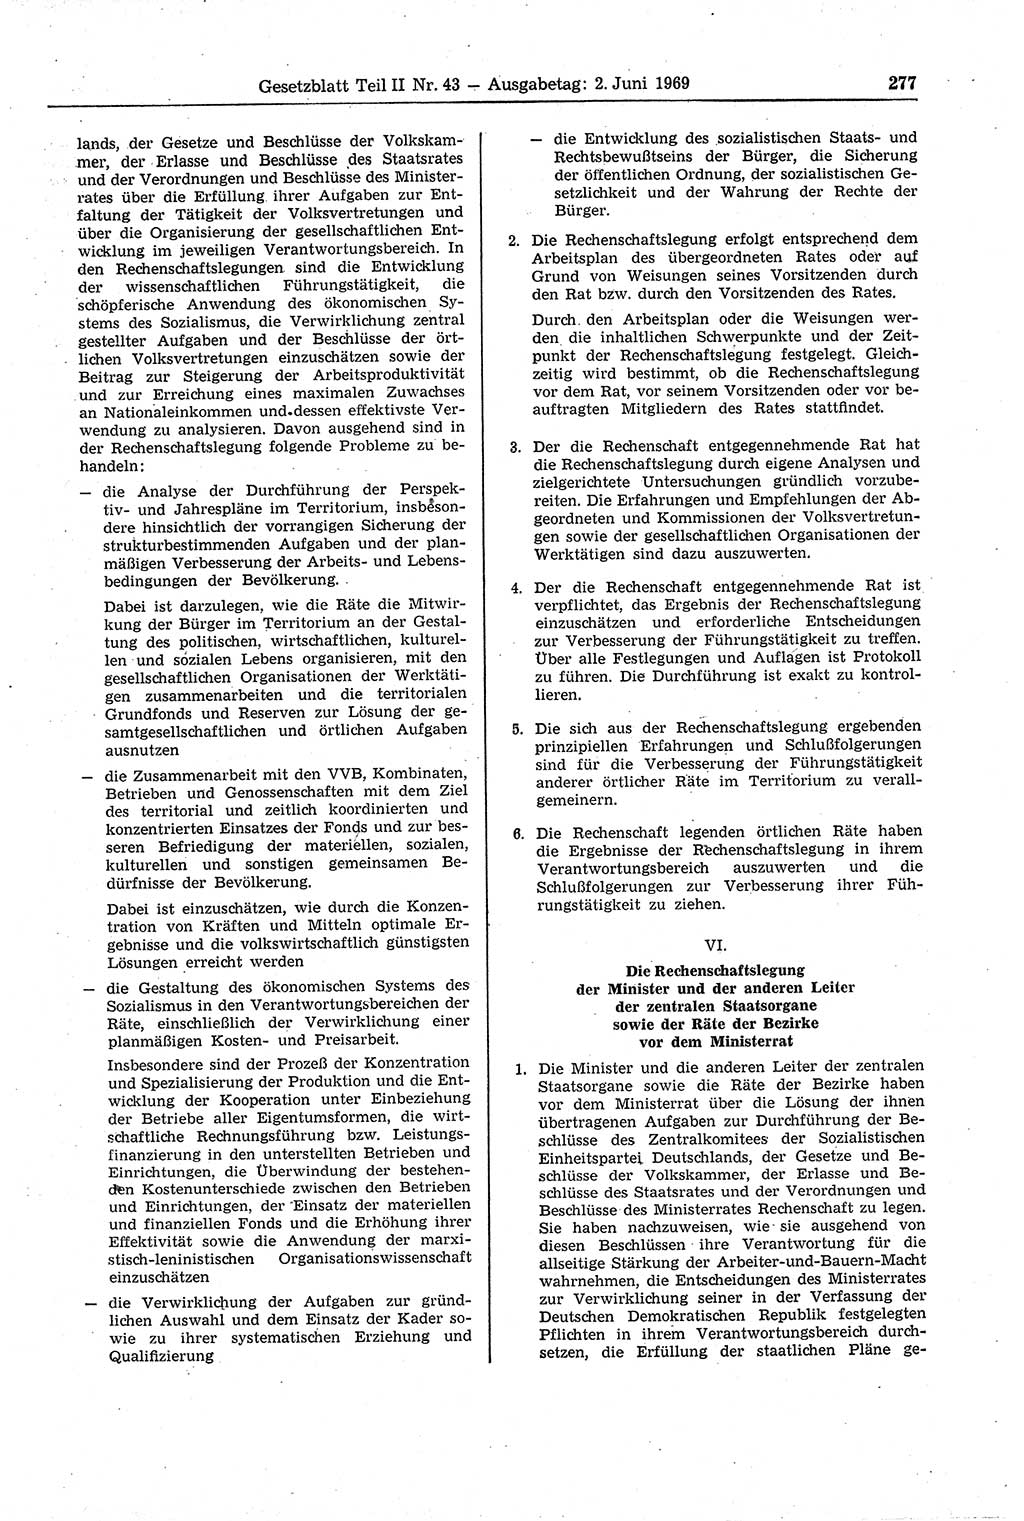 Gesetzblatt (GBl.) der Deutschen Demokratischen Republik (DDR) Teil ⅠⅠ 1969, Seite 277 (GBl. DDR ⅠⅠ 1969, S. 277)